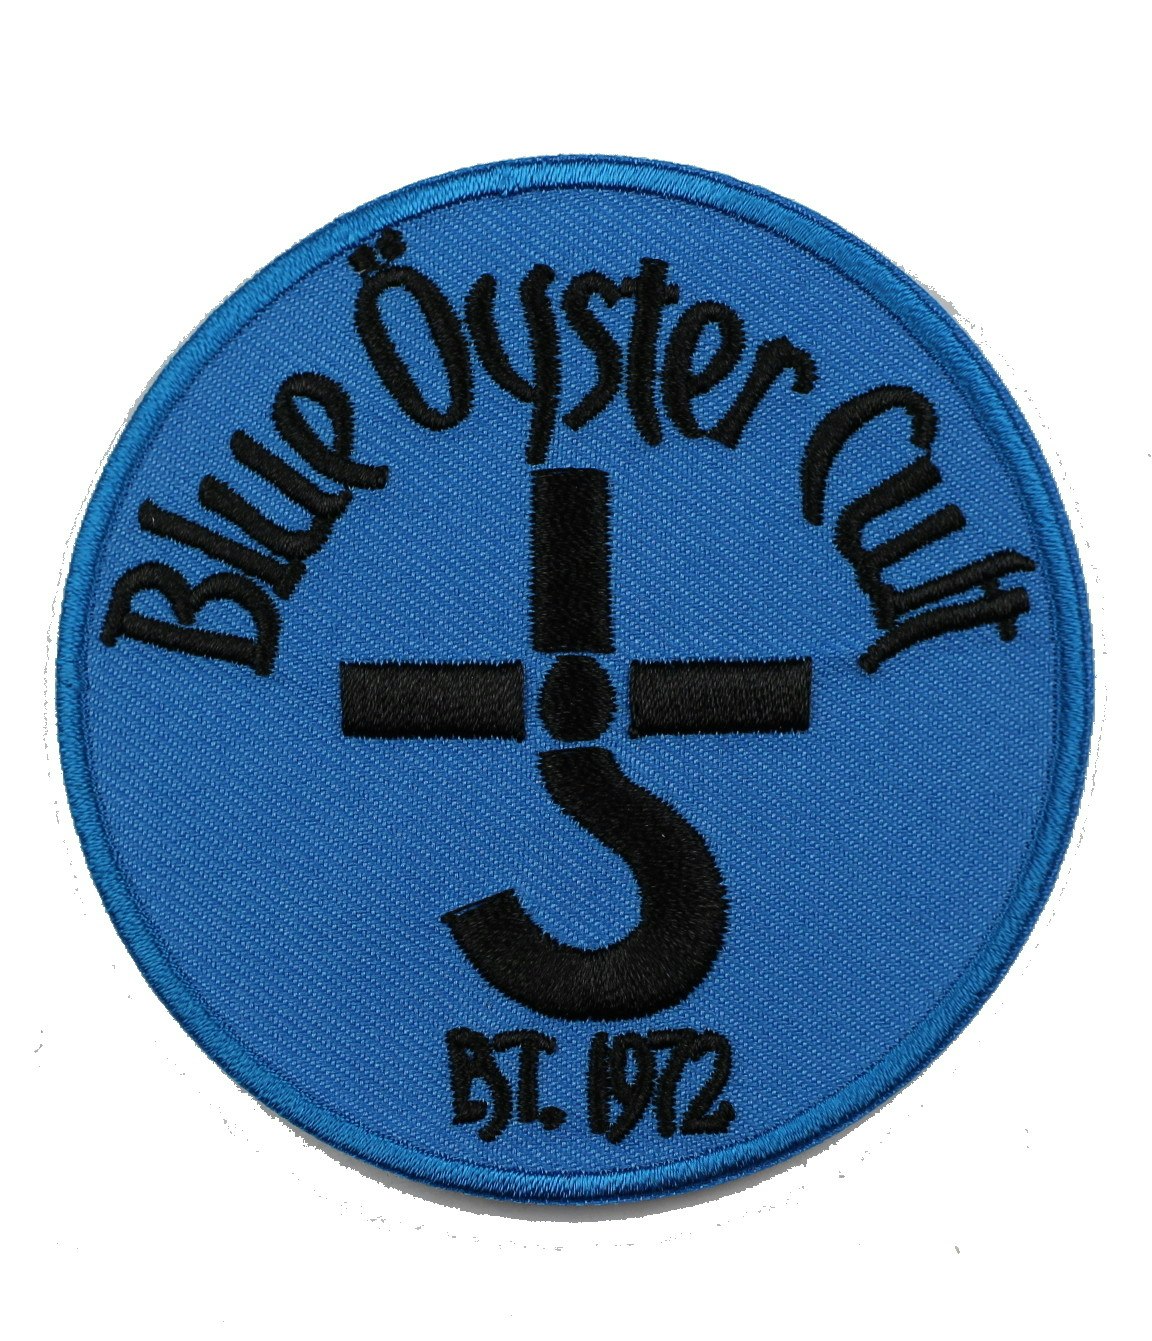 Blue öyster cult Est.1972 logo patch